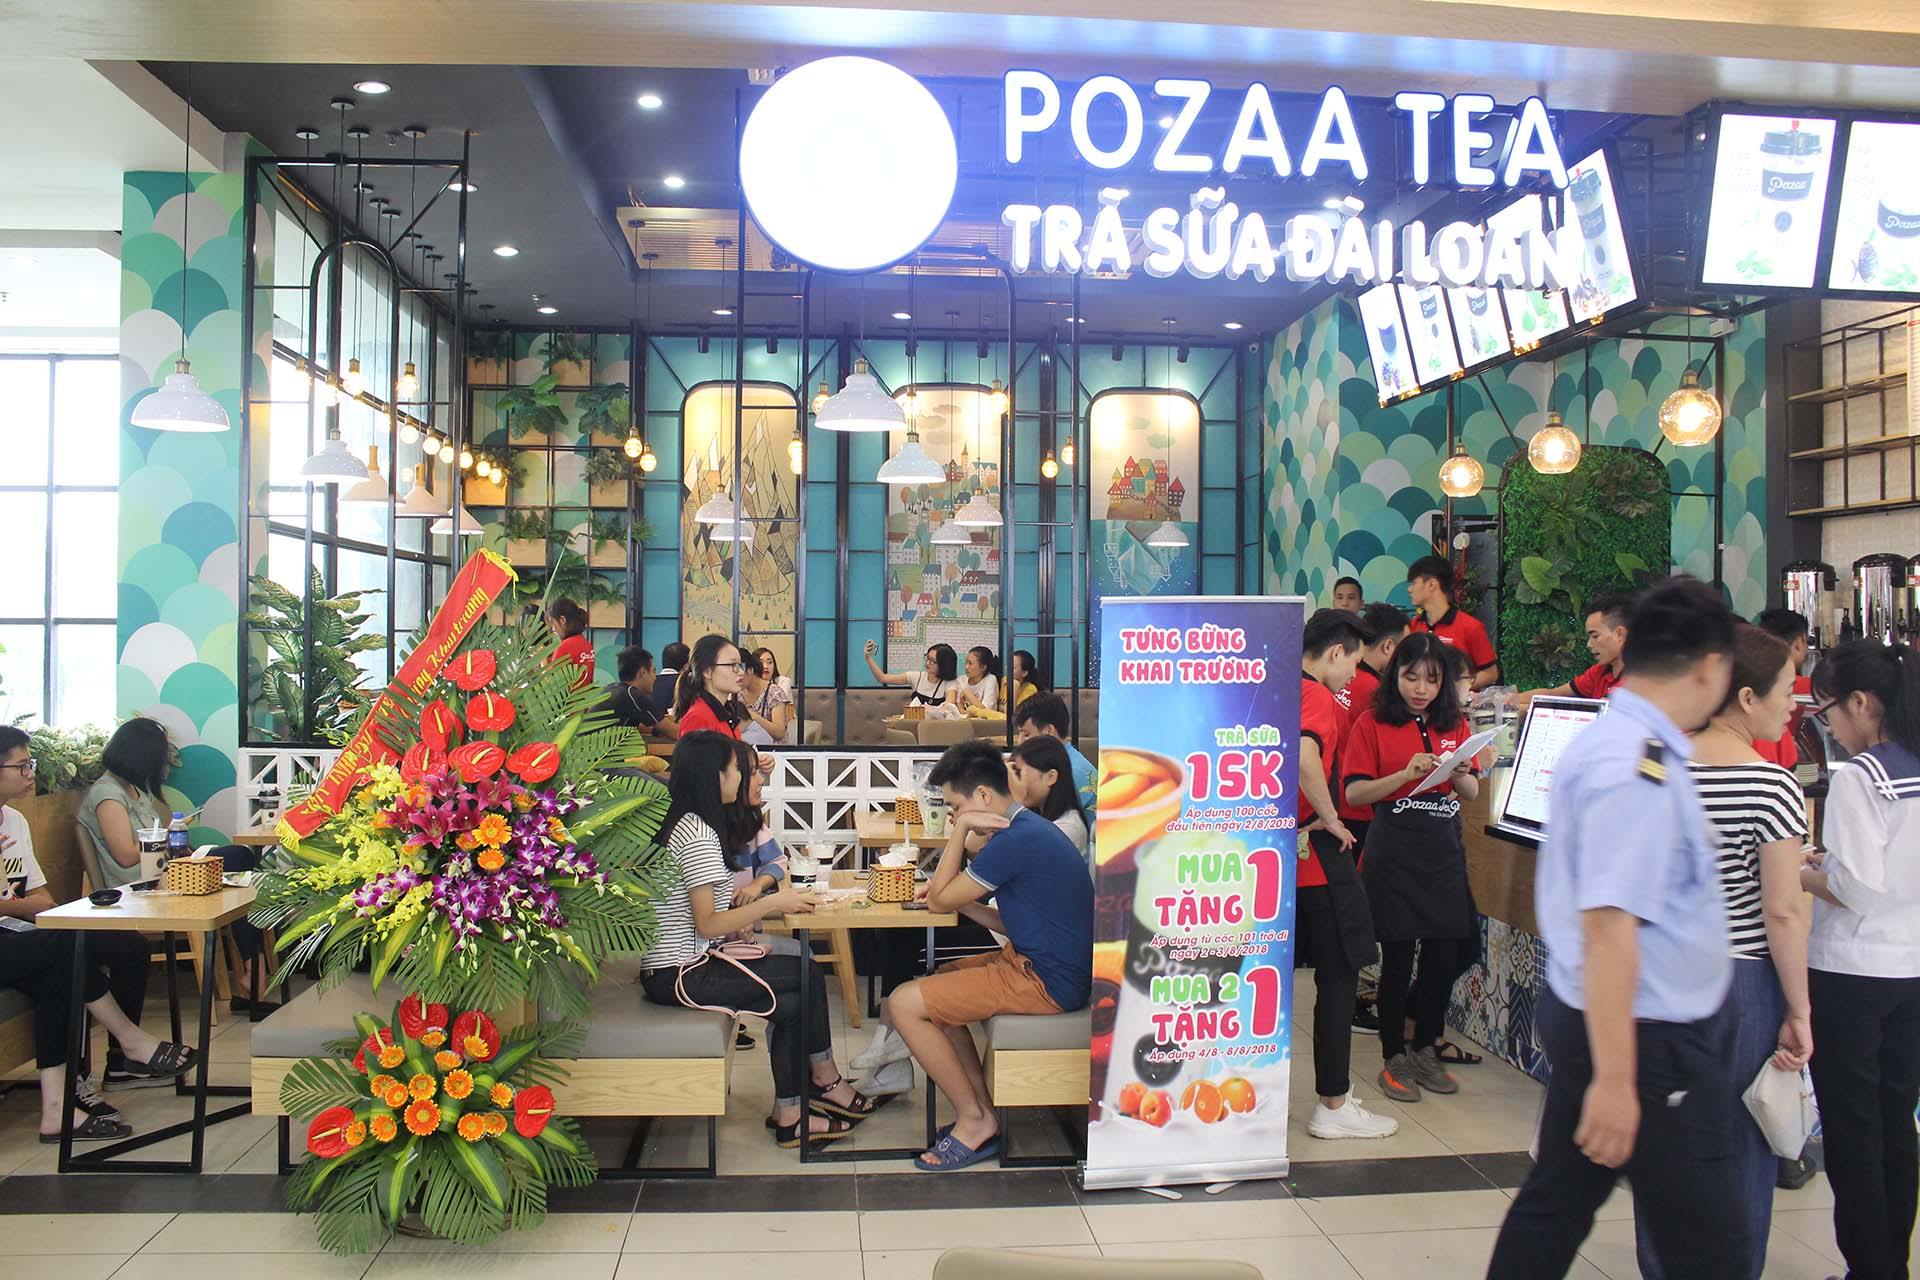 Chi phí nhượng quyền Trà sữa Pozaa Tea